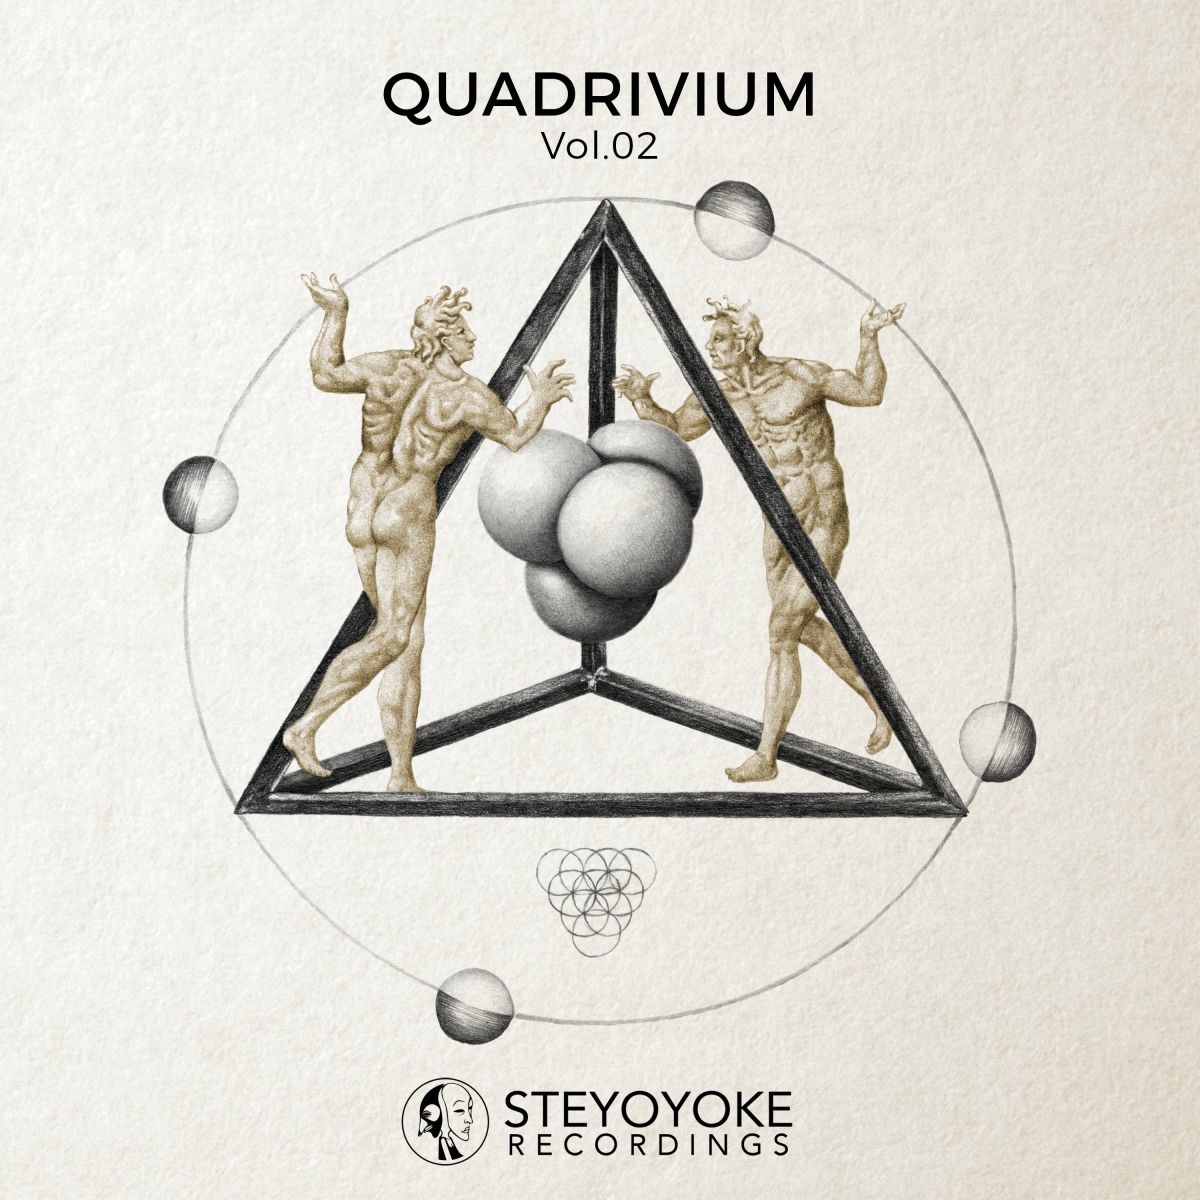 VA - Quadrivium, Vol. 02 / Steyoyoke